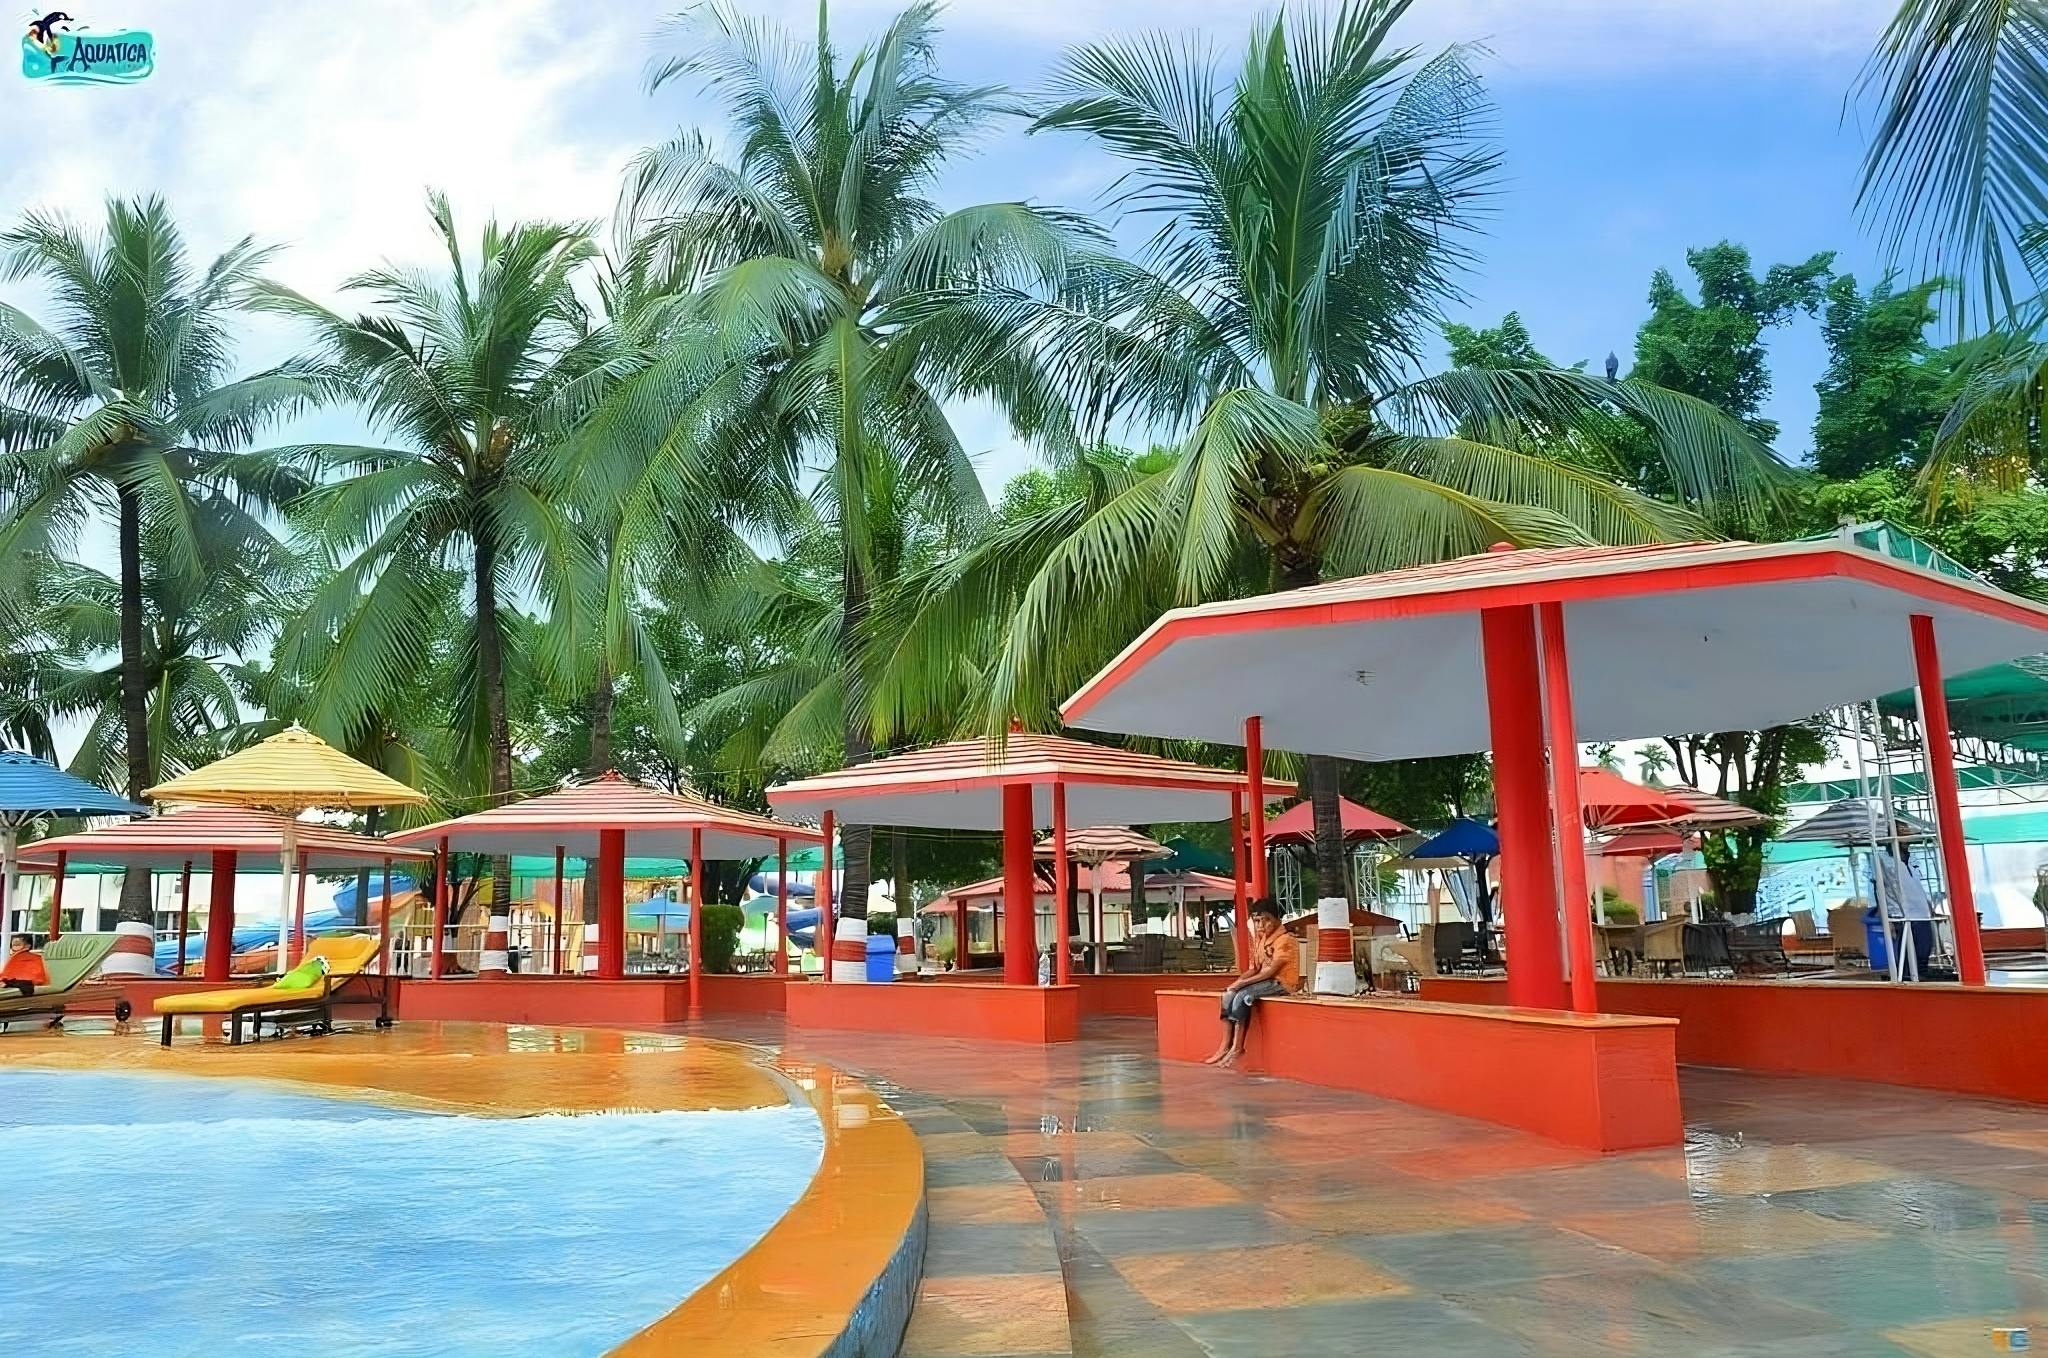 Aquatica Banquet Resort & Water Park